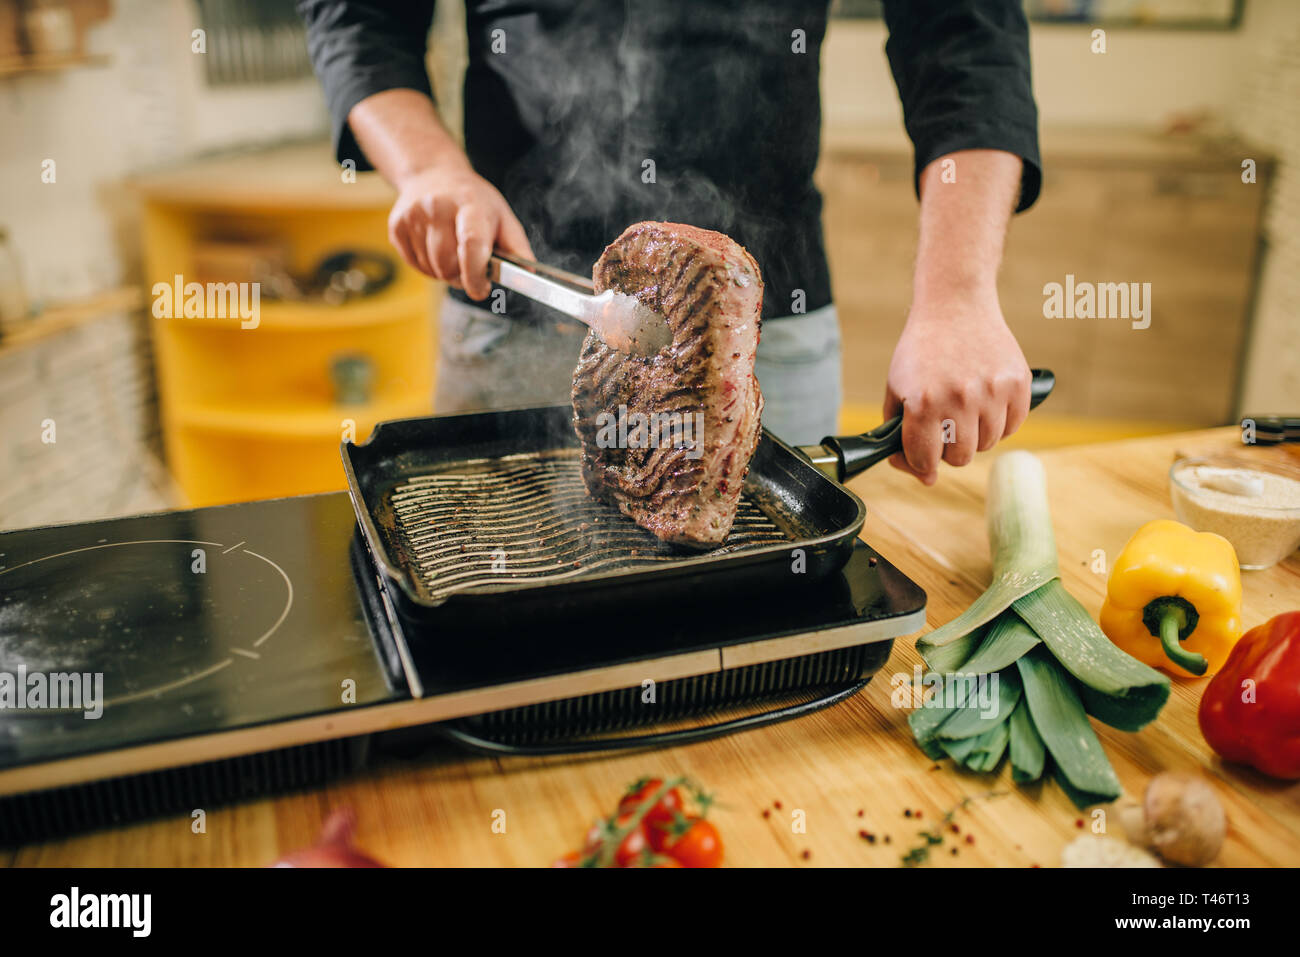 Persona di sesso maschile la cottura della carne in una padella in cucina Foto Stock